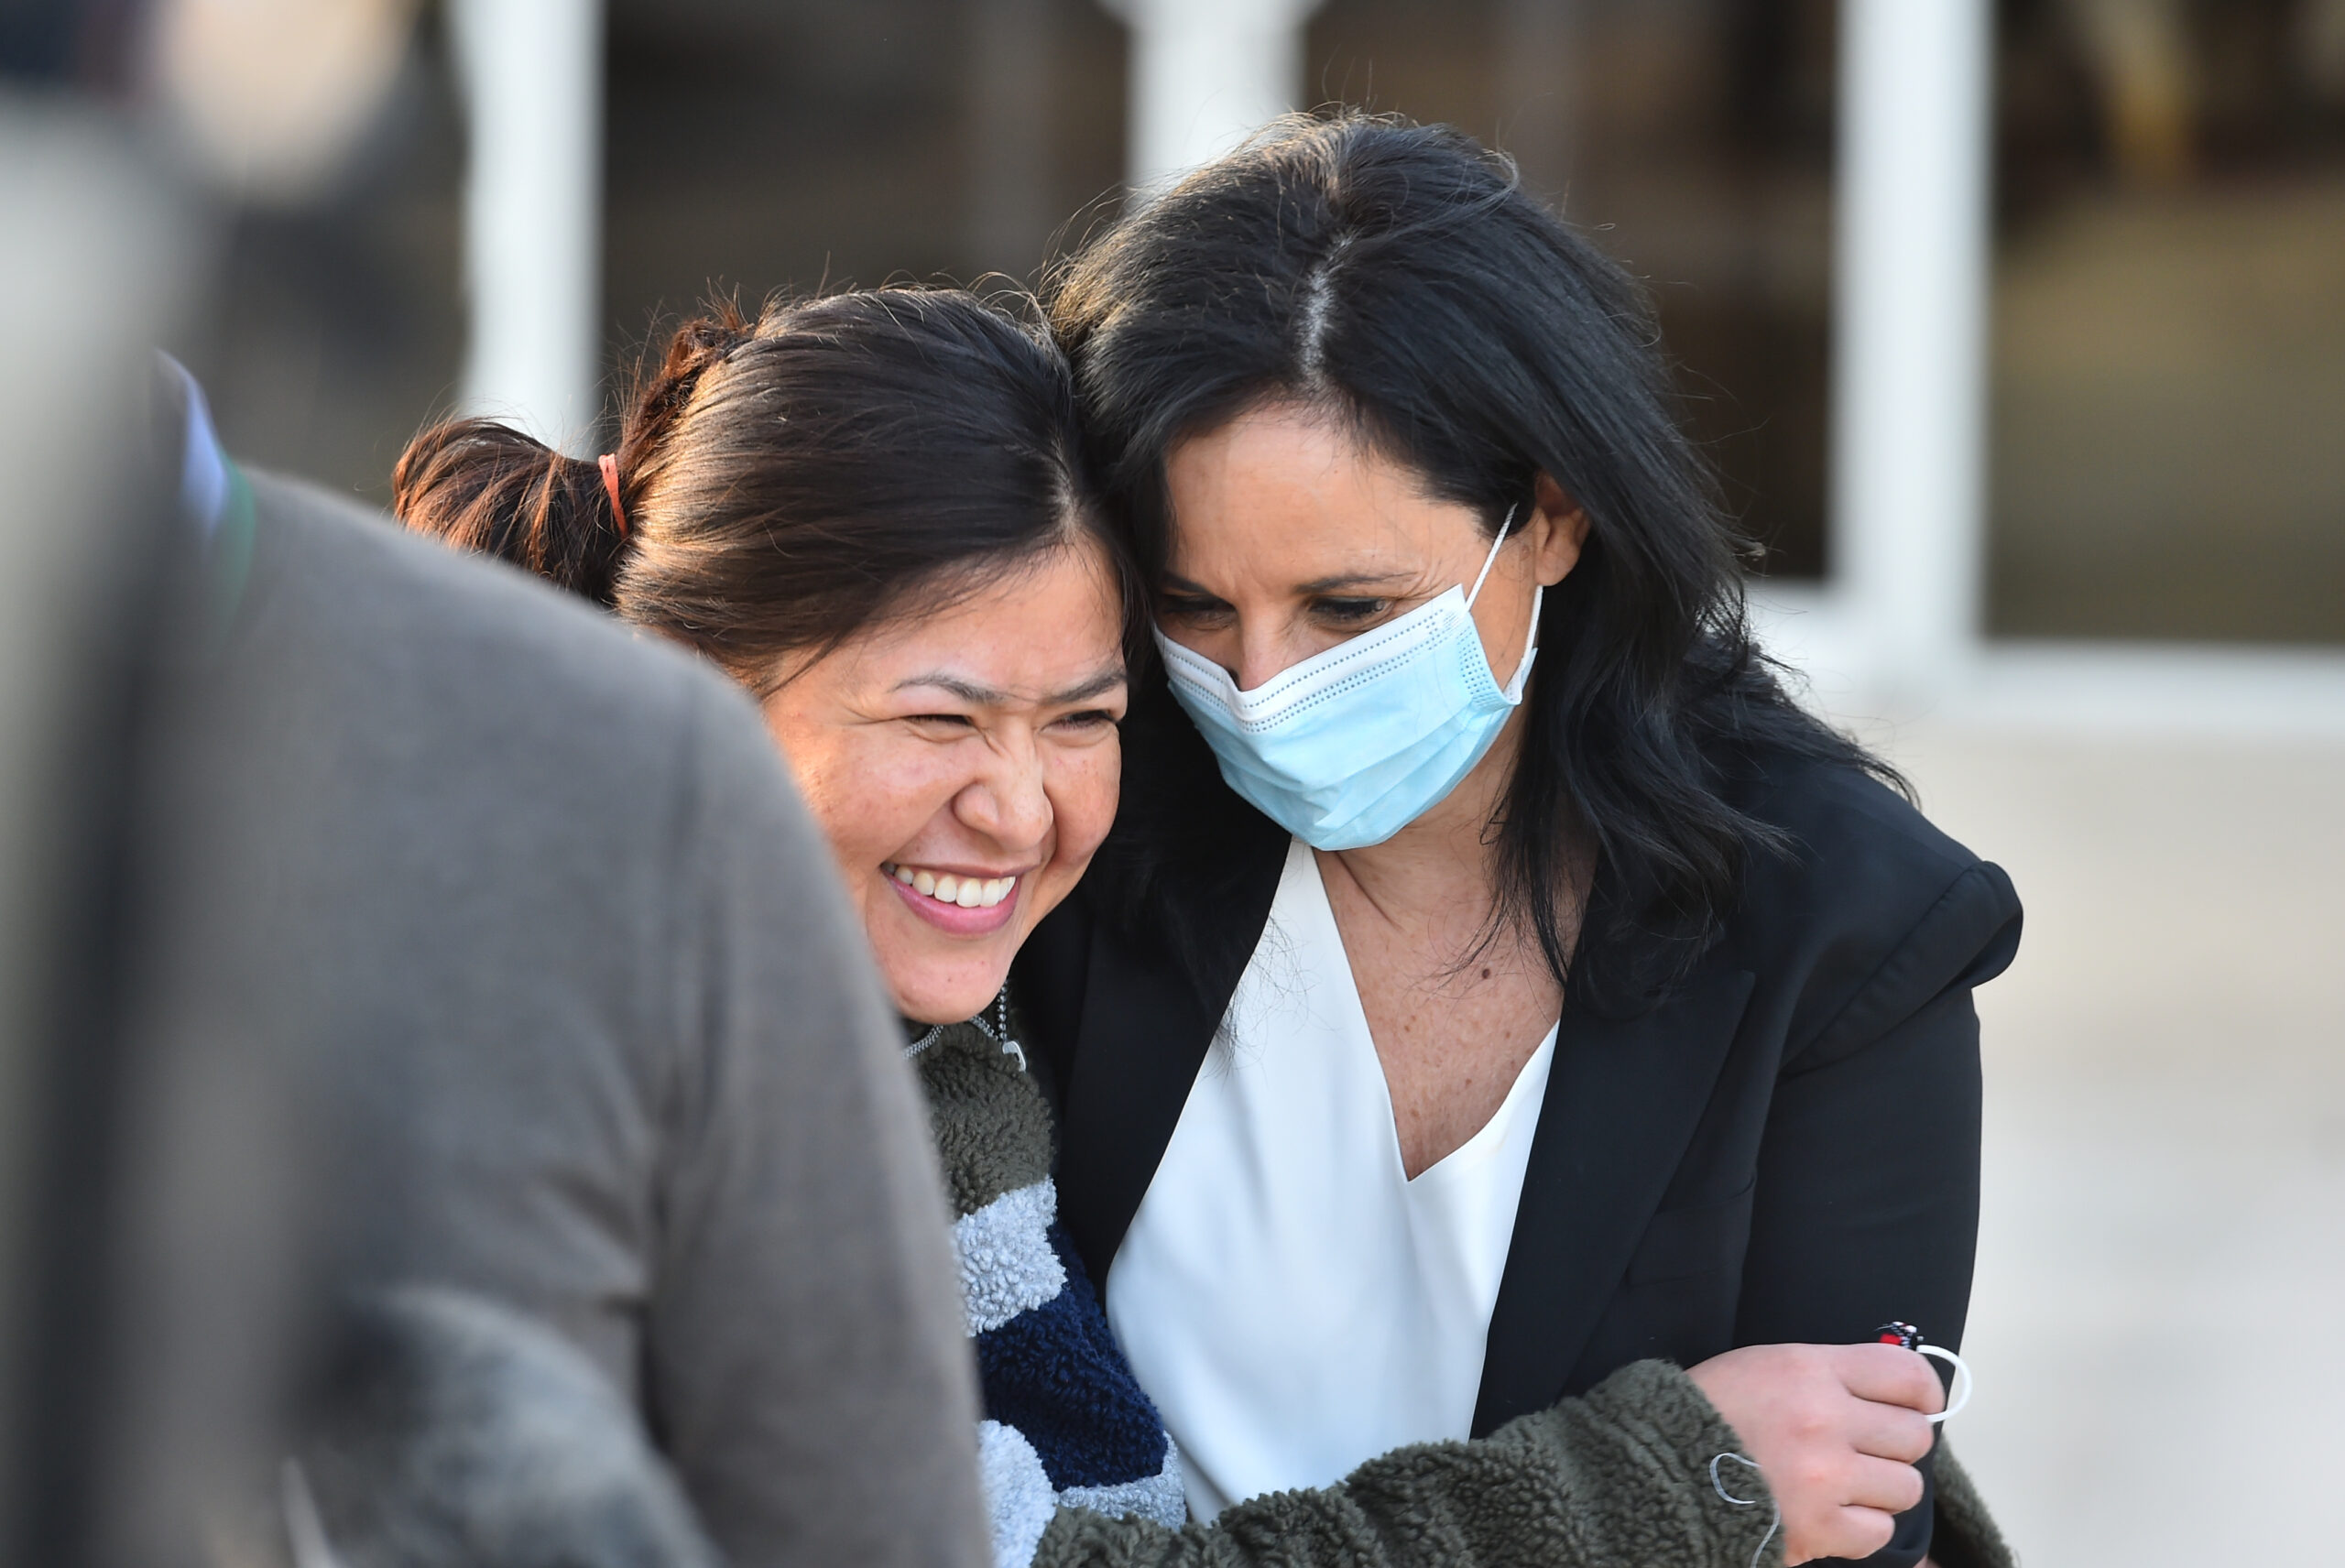 Rosa Jiménez y su abogada Vanessa Potkin luego de su liberación el 21 de enero de 2021 (Imagen: Robin Jerstad para AP / Innocence Project)
